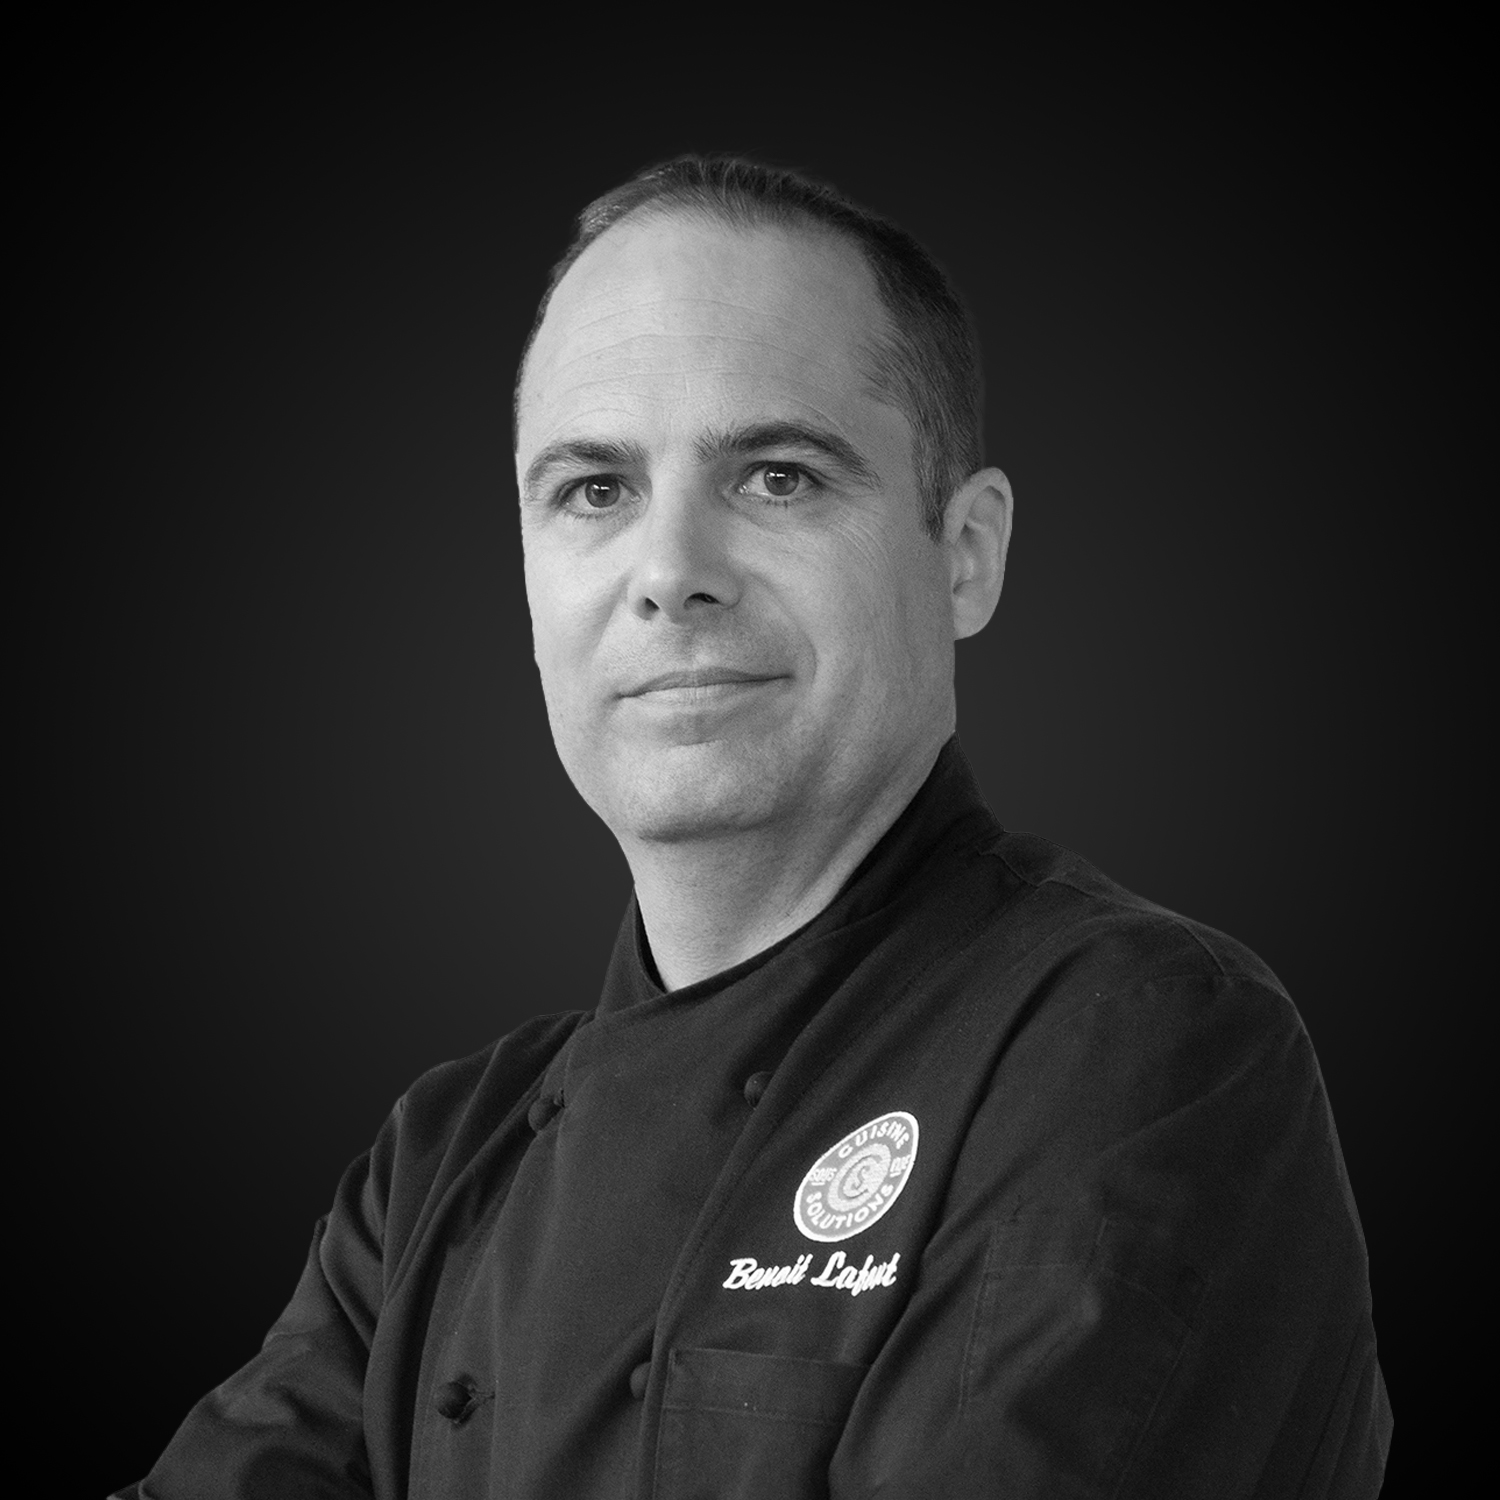 Portrait of Chef Benoit Lafont